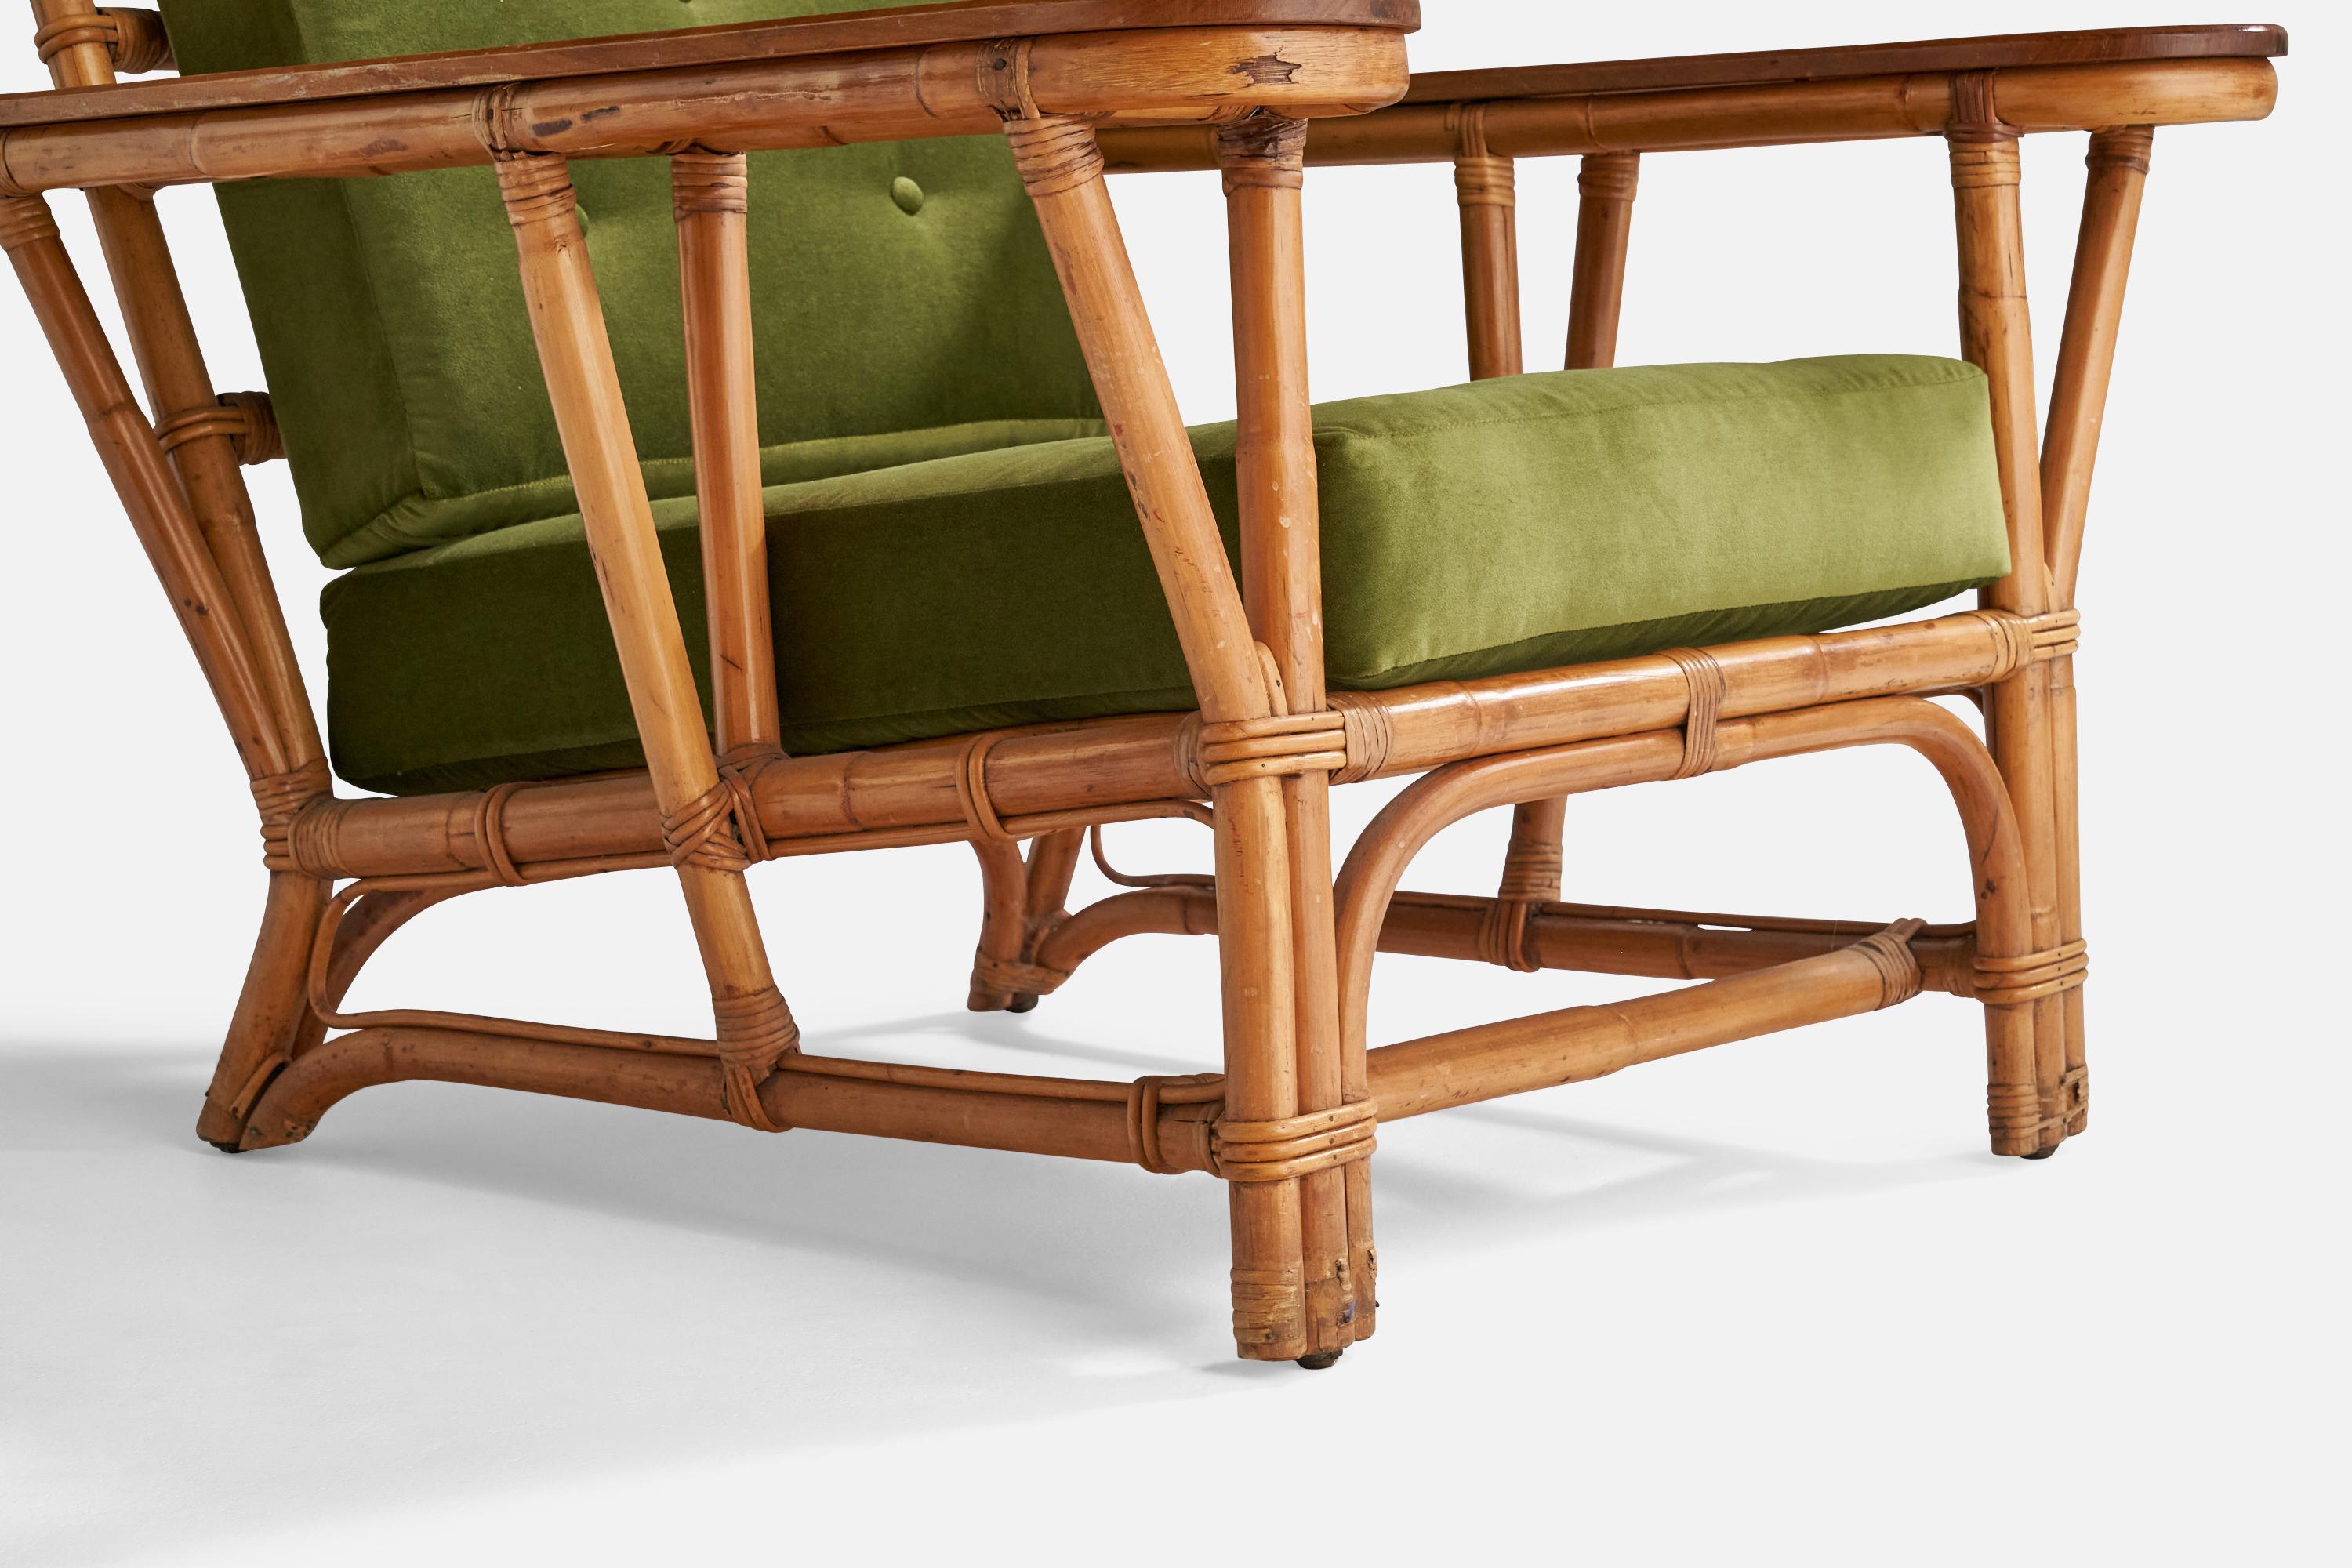 American Designer, Lounge Chair, Maple, Velvet, Bamboo, Rattan, USA, 1940s For Sale 2